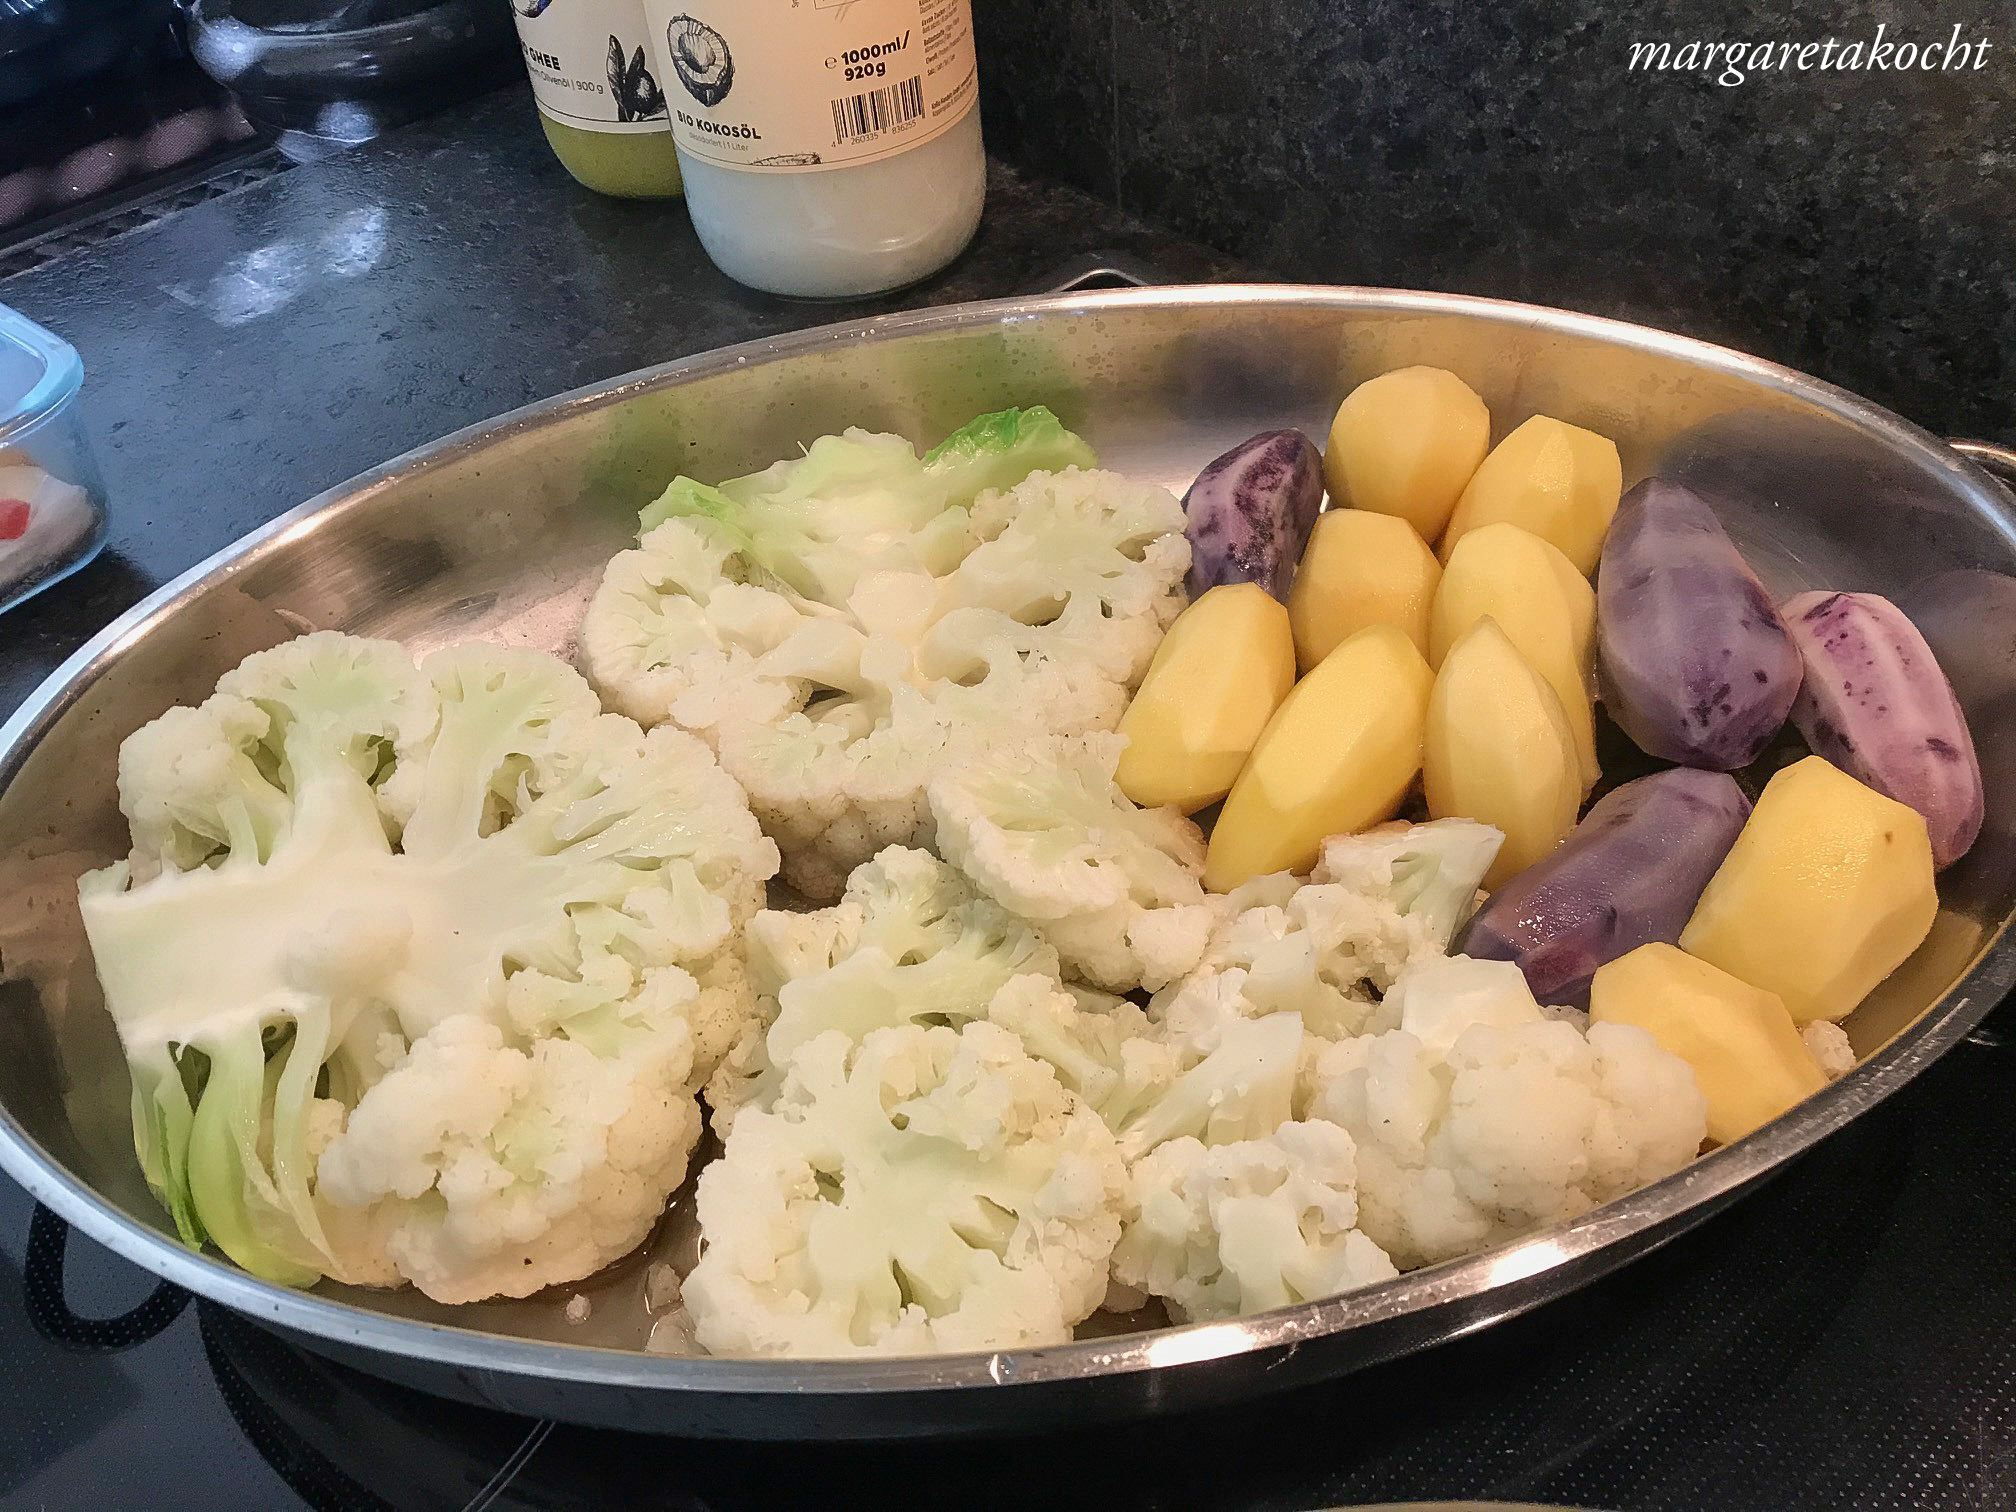 überbackener Karfiol mit Kartoffeln aus dem Backrohr